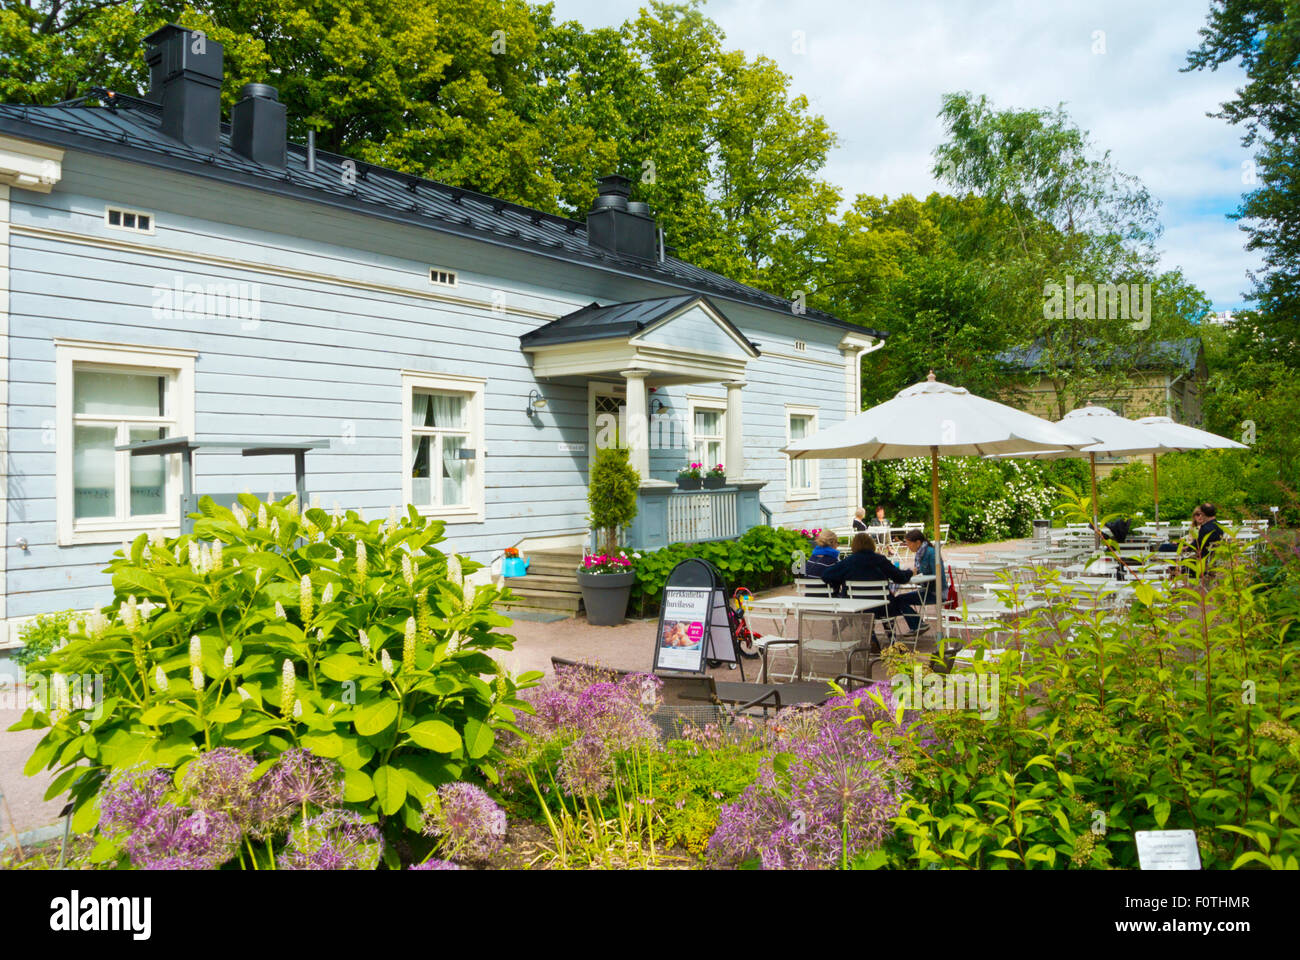 Cafe restaurant, Botanical gardens, Kasvitieteellinen puutarha, Kaisaniemen puisto, Kaisaniemi park, Helsinki, Finland Stock Photo